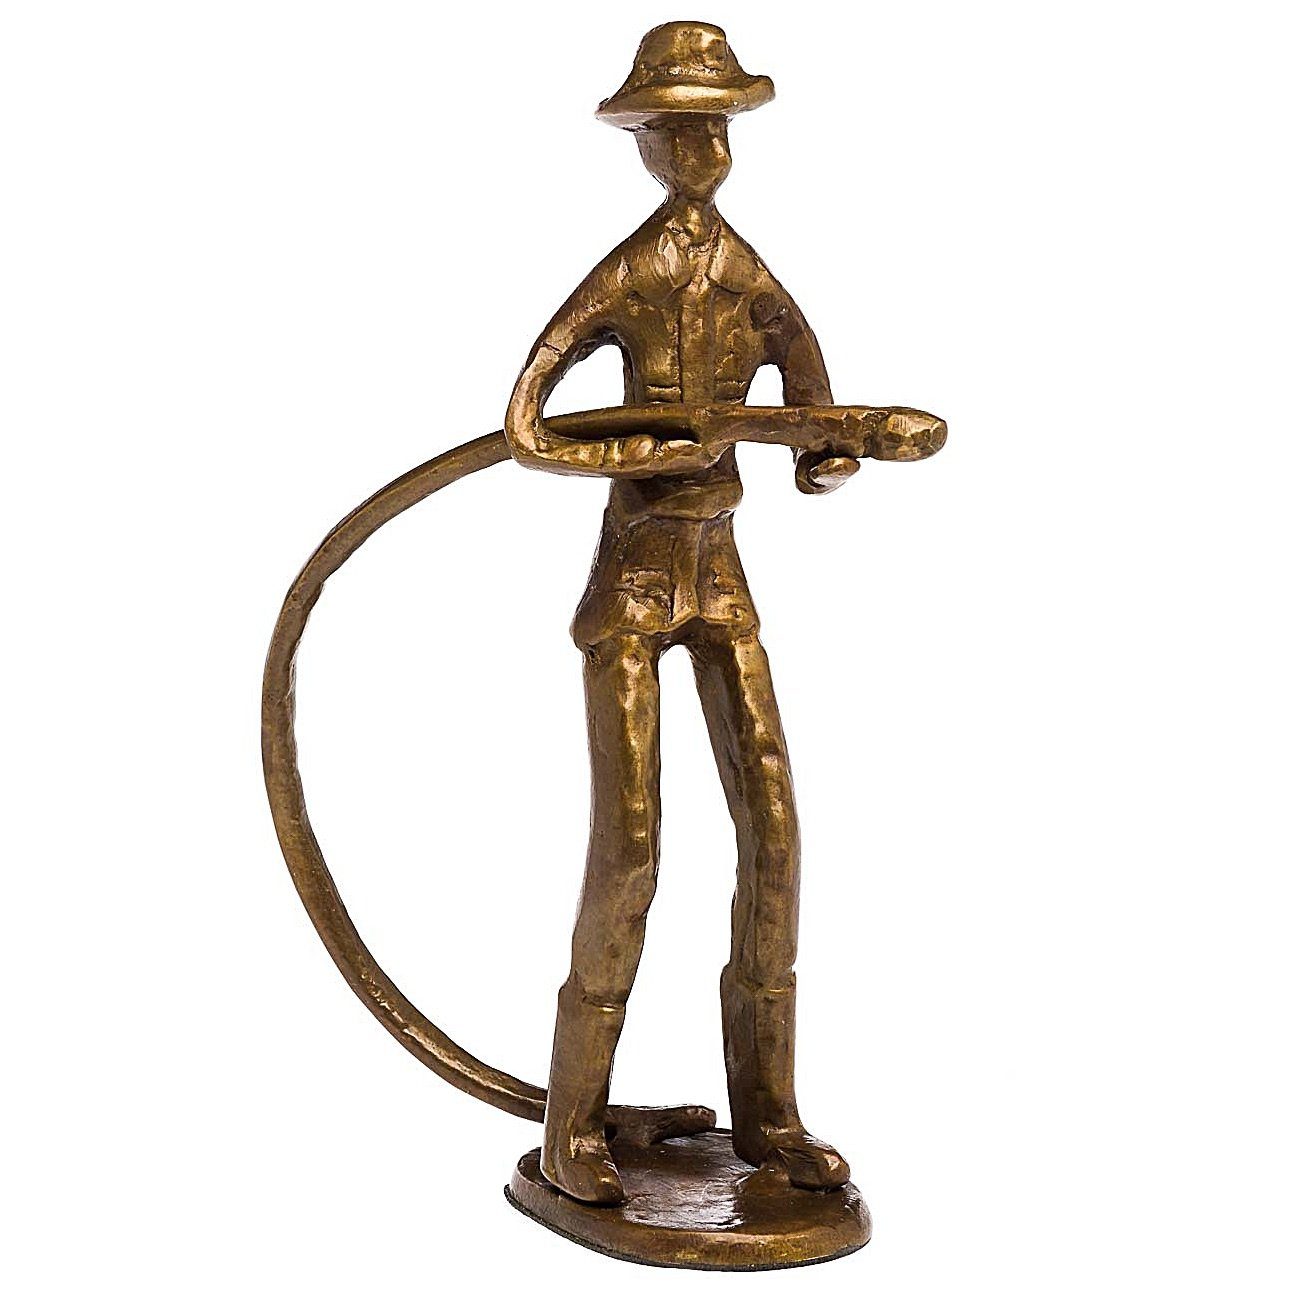 Aubaho Skulptur Skulptur Antik-Stil Bronze Figur Moderne Feuerwehr Kunst Feuerwehrmann